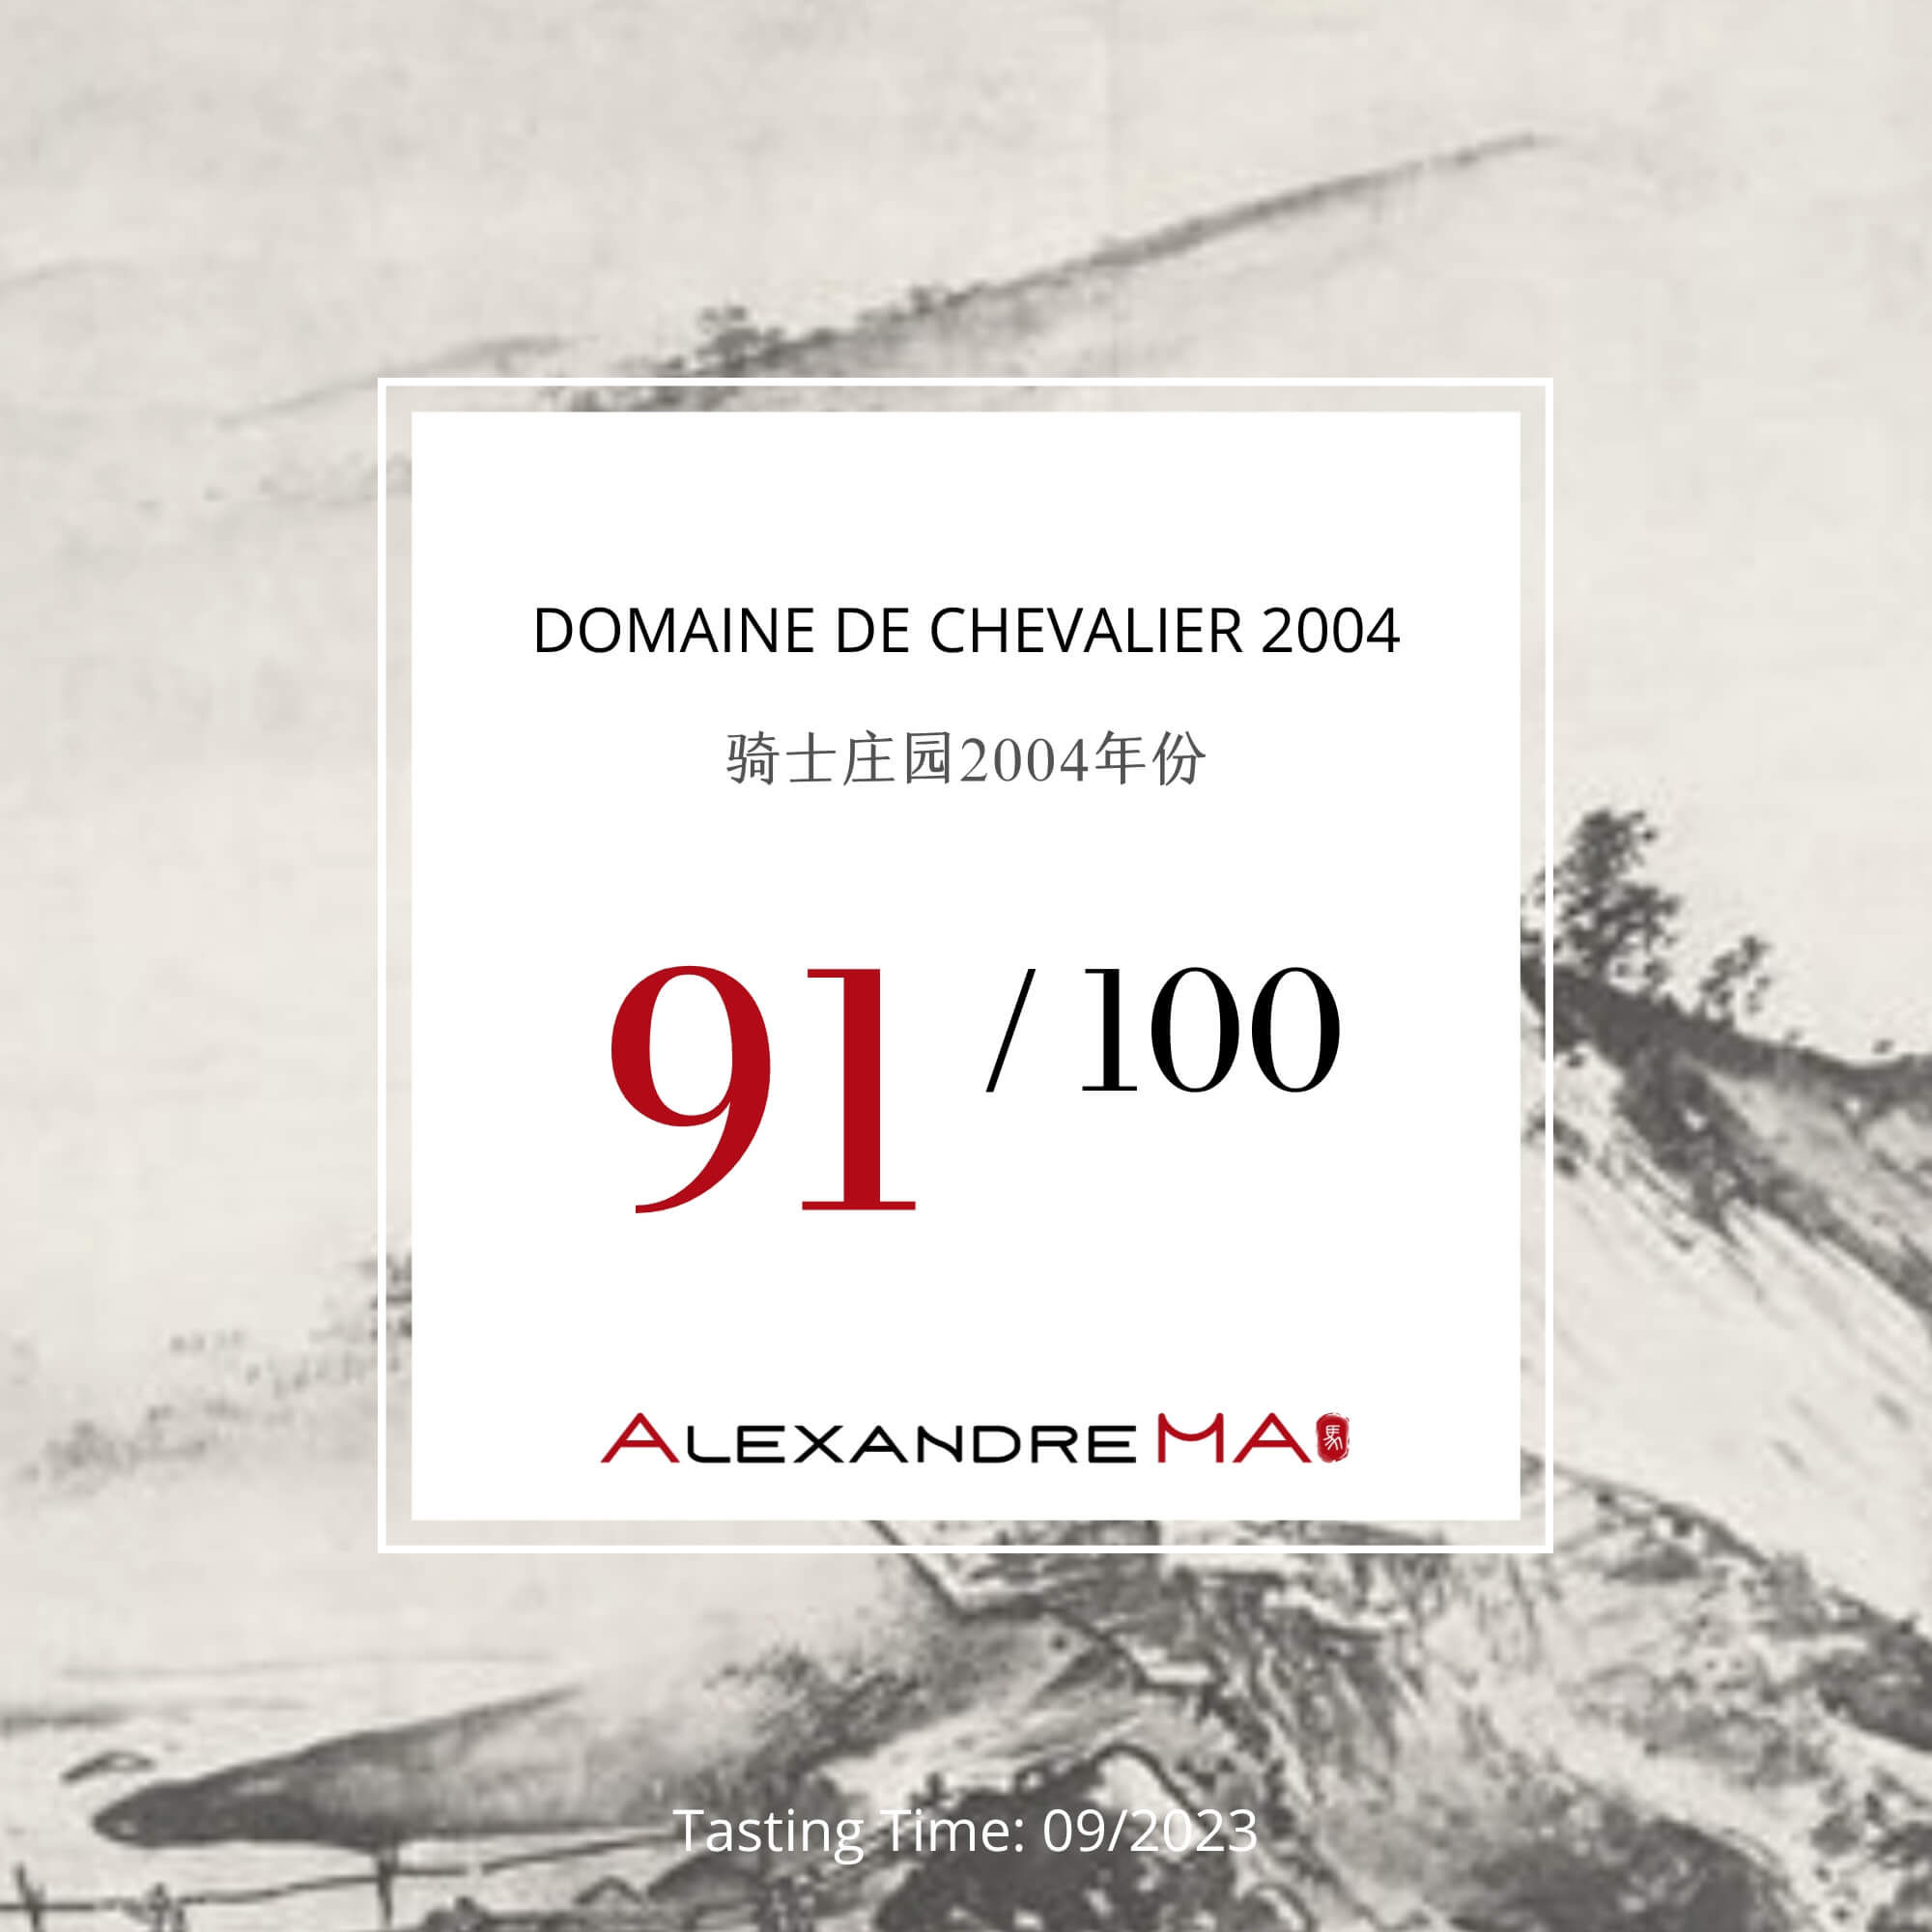 Domaine de Chevalier 2004 - Alexandre MA